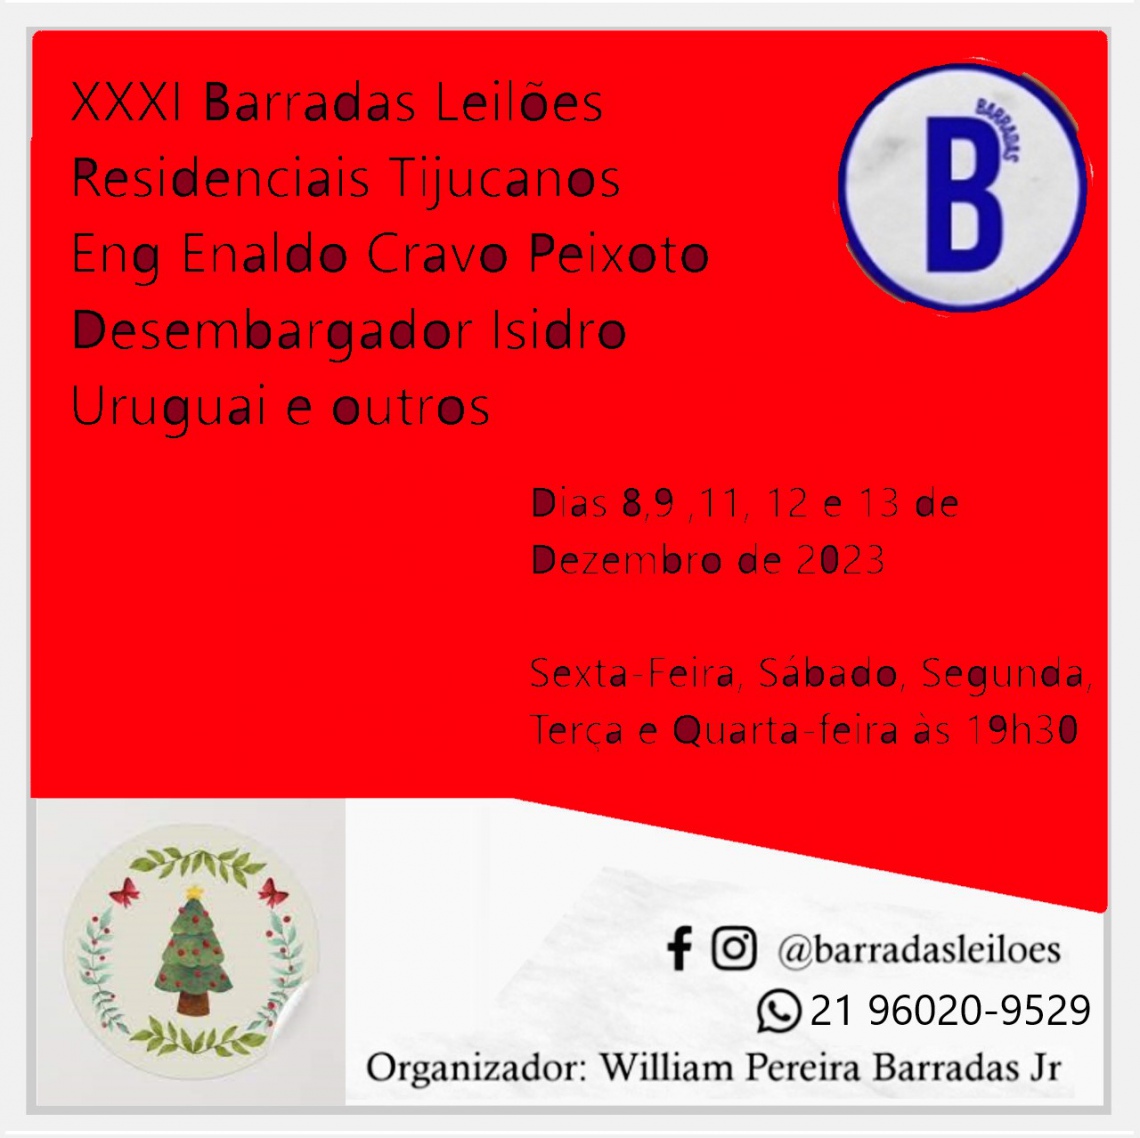 XXXI Barradas Leilões - Residenciais Tijucanos - Eng Enaldo , Desembargador Isidro e Uruguai